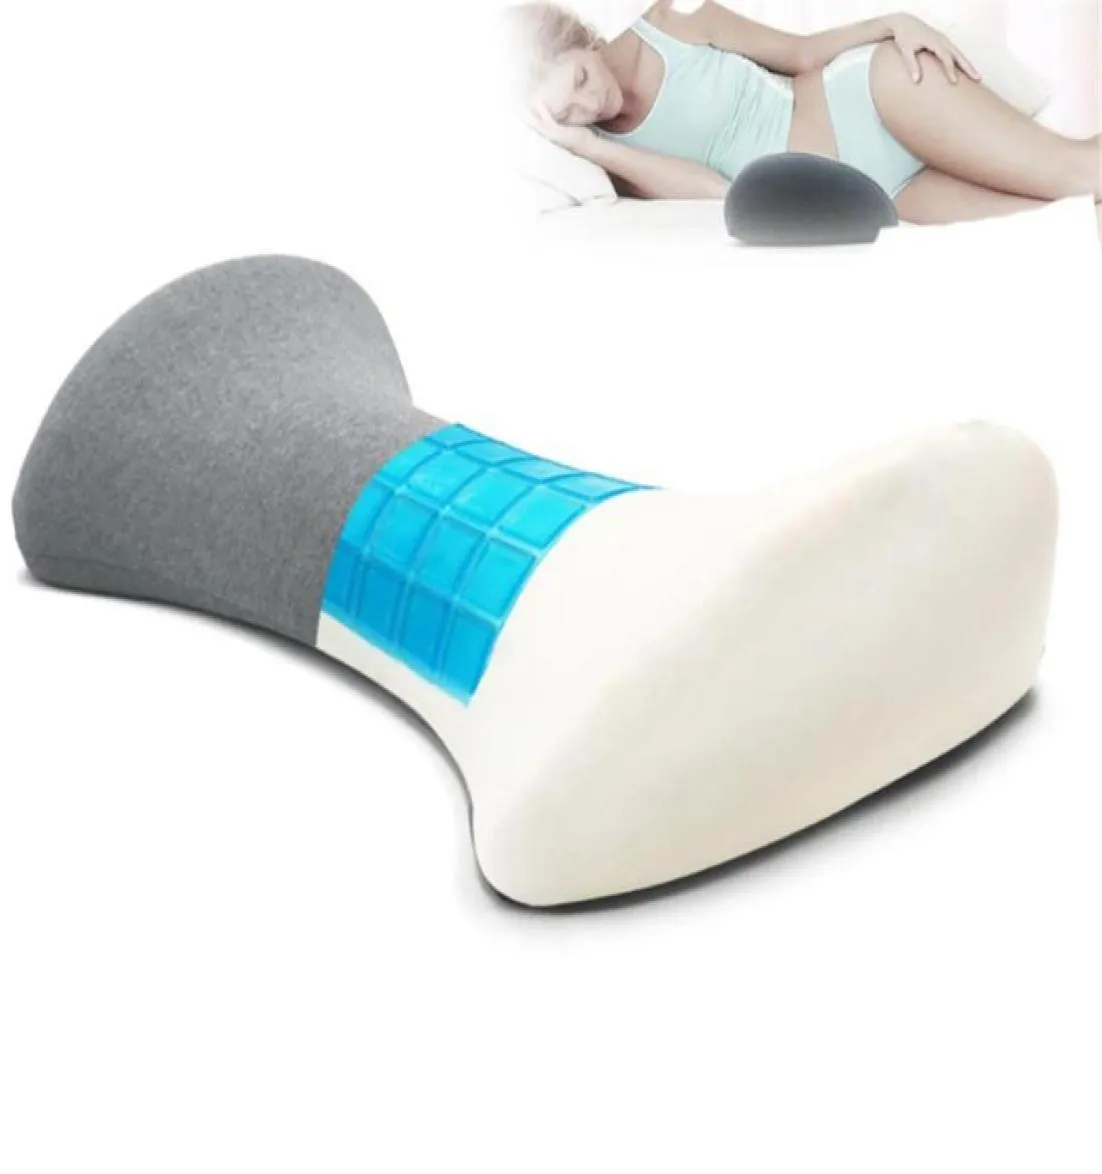 クシオン装置枕メモリフォーム腰椎クッションスパインパッドウエストソフトサポートマット女性ベッドスリーピングバックレストマットクシオン6880580